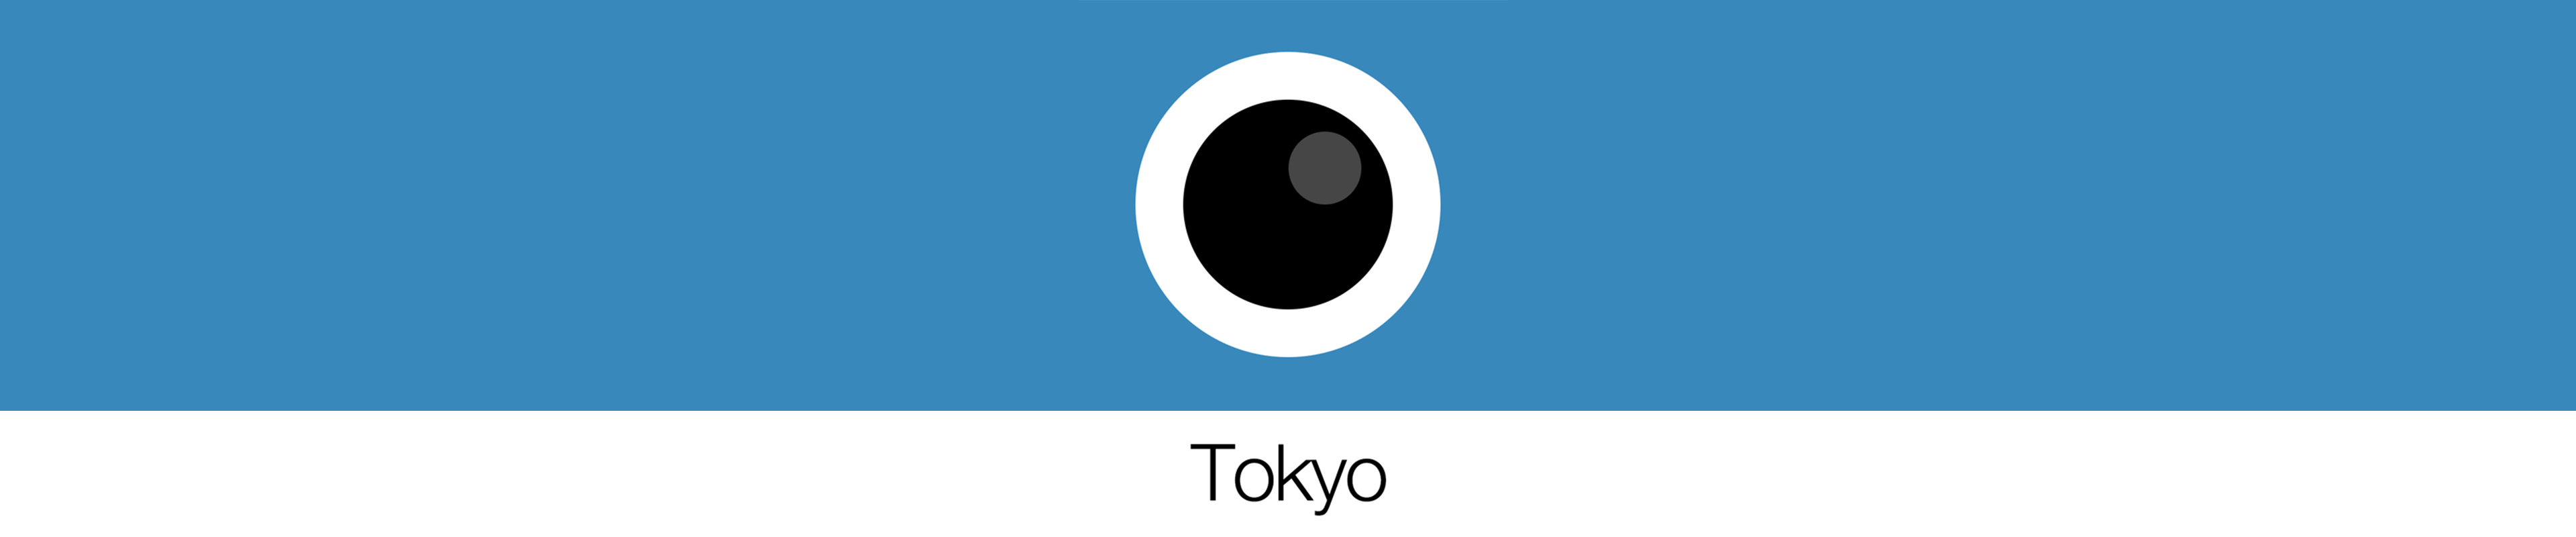 [已购]Analog Tokyo (模拟东京)-草蜢资源